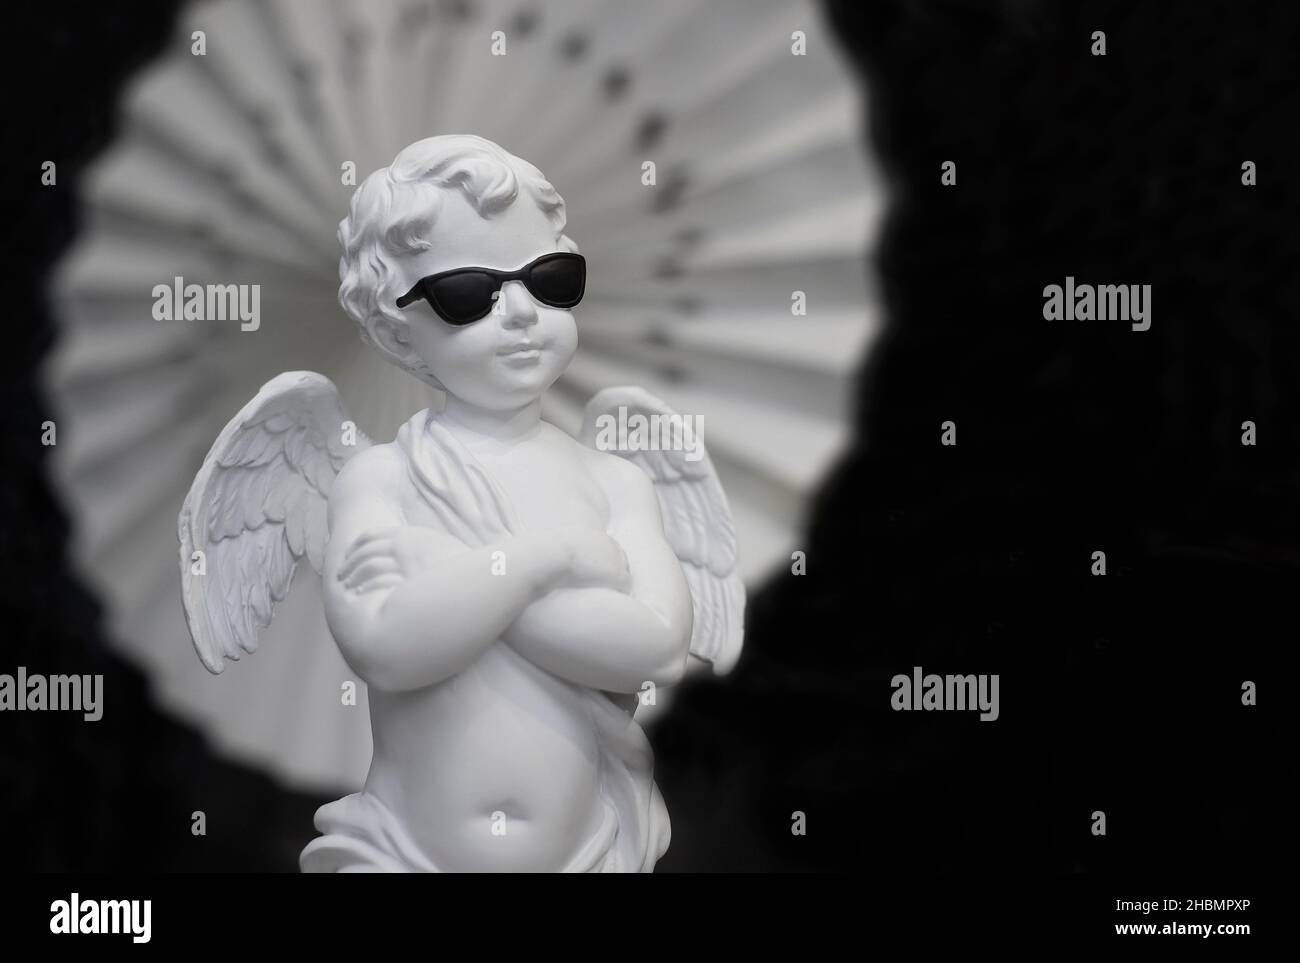 Porzellan Cherub trägt eine Sonnenbrille und die Arme sind auf schwarzem Hintergrund gefaltet Stockfoto